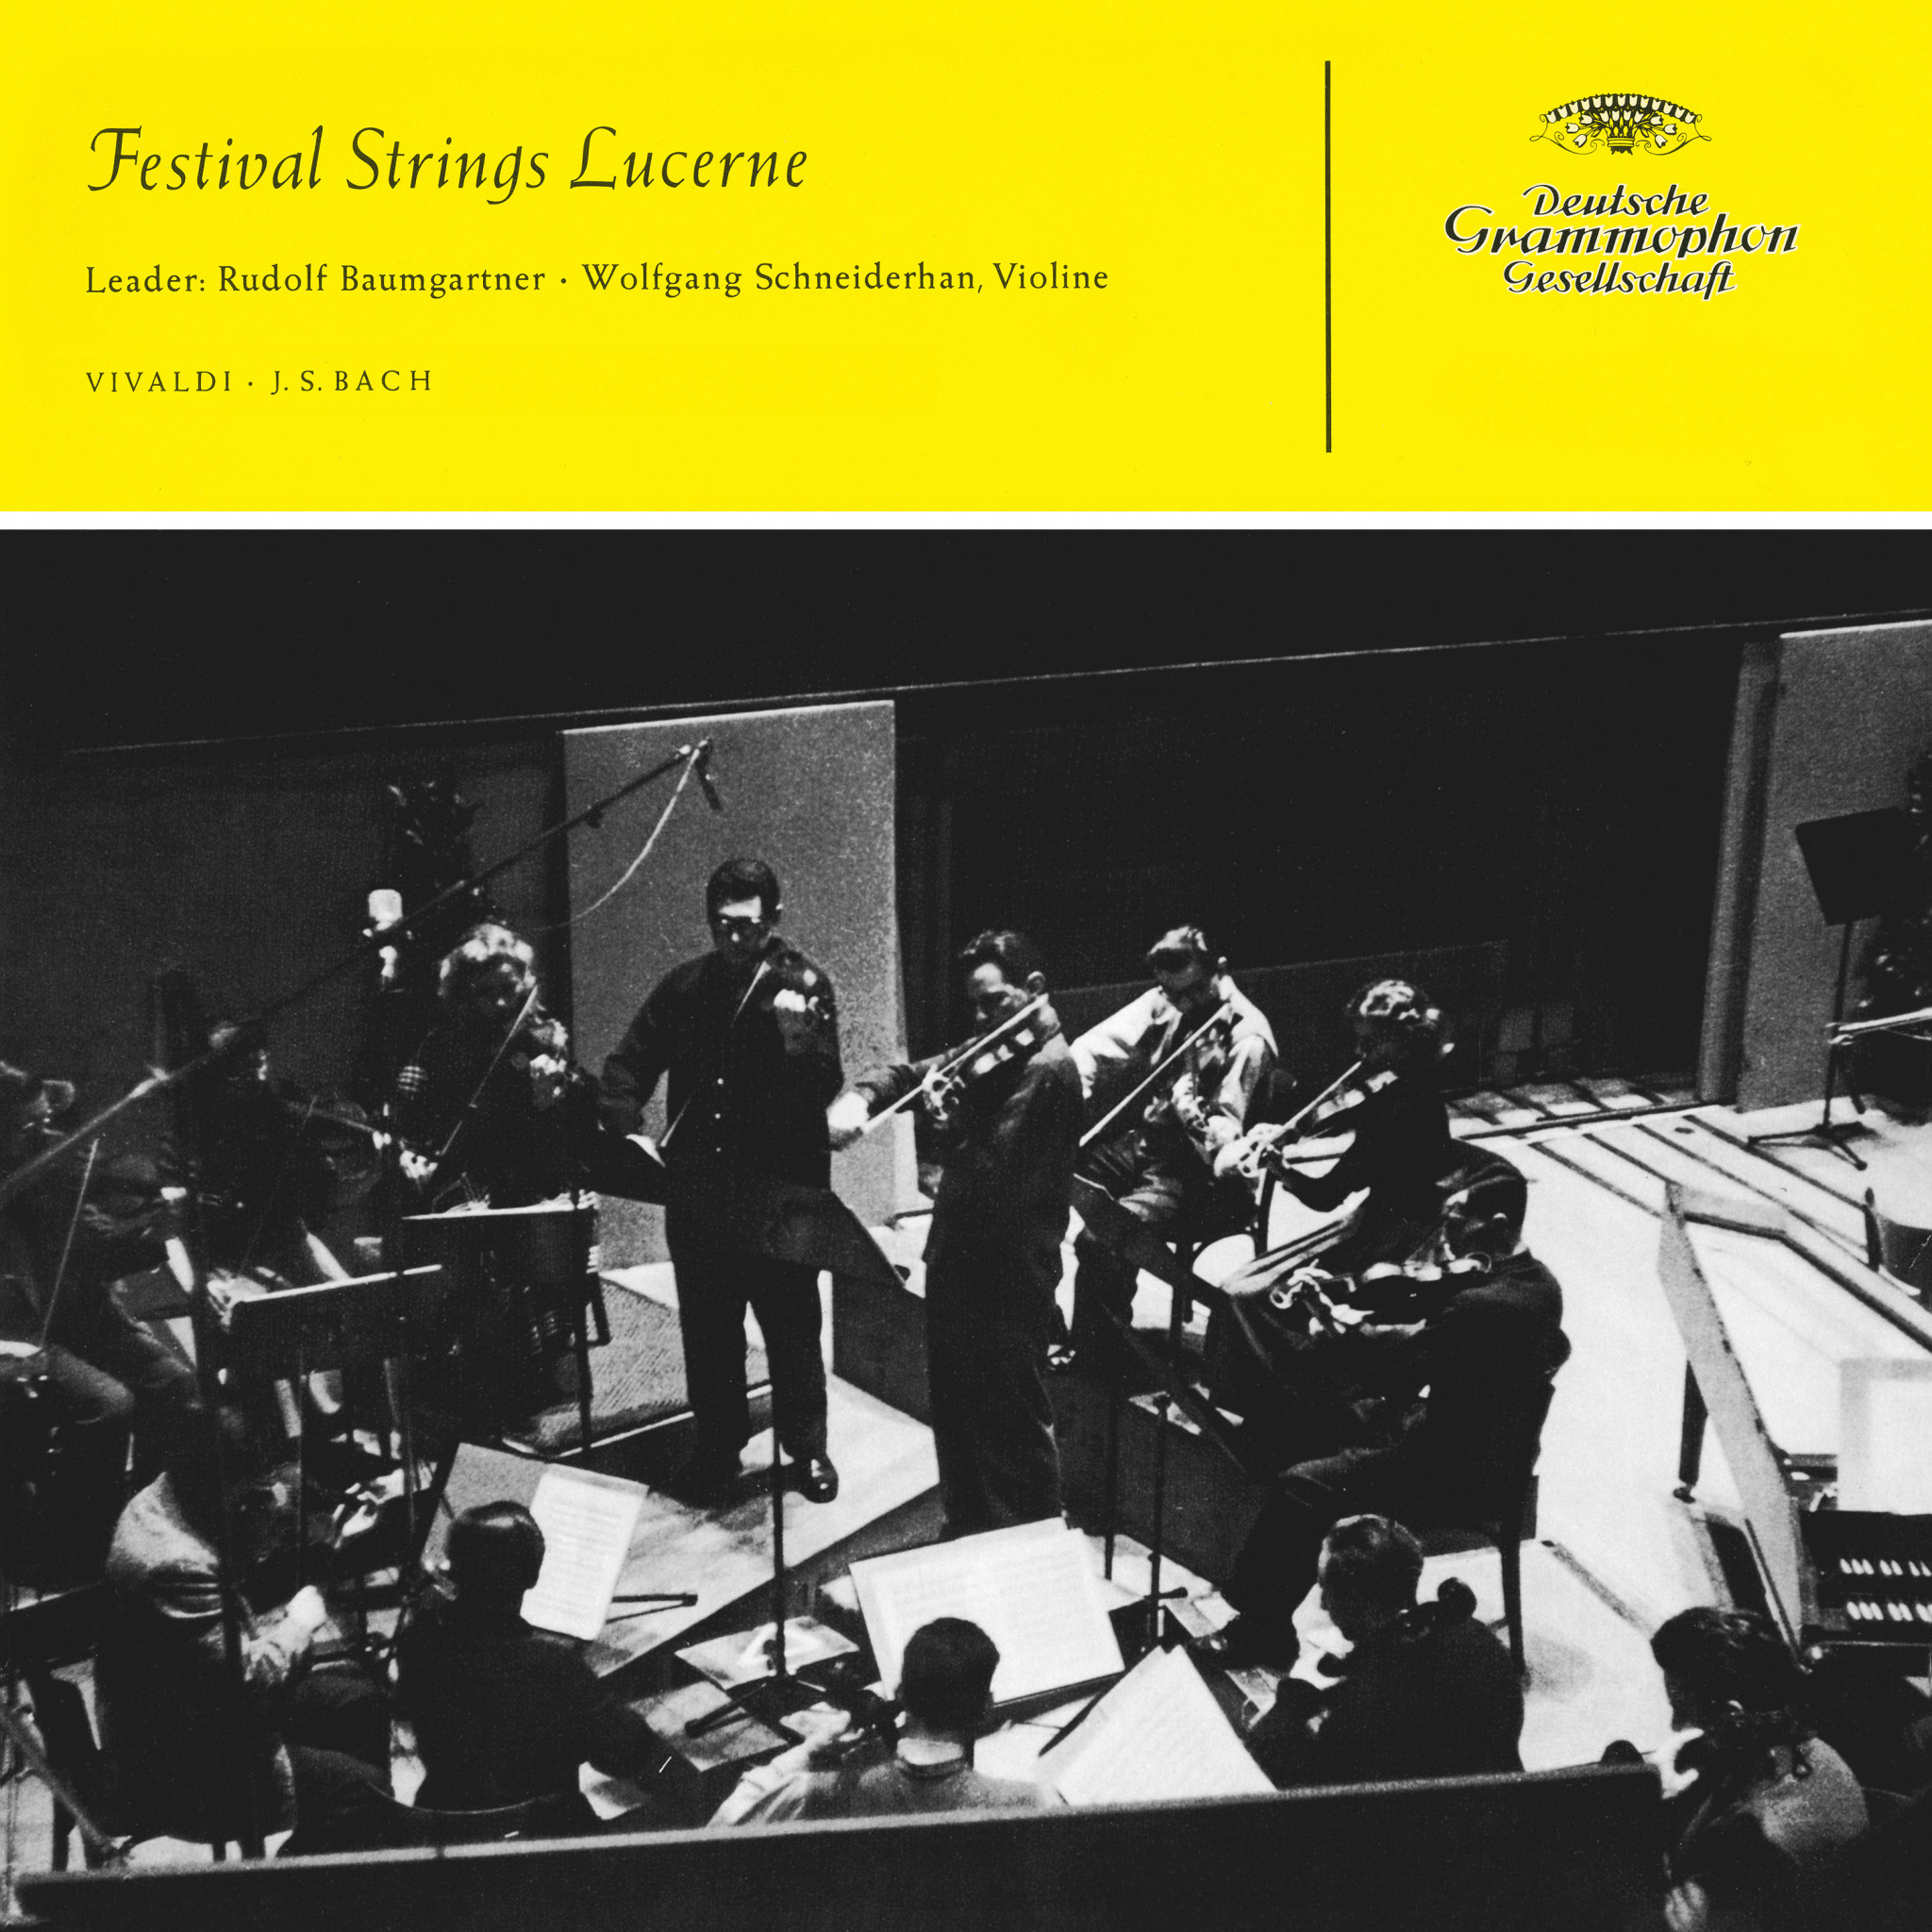 Wolfgang Schneiderhan - Vivaldi: Festival Strings Lucerne